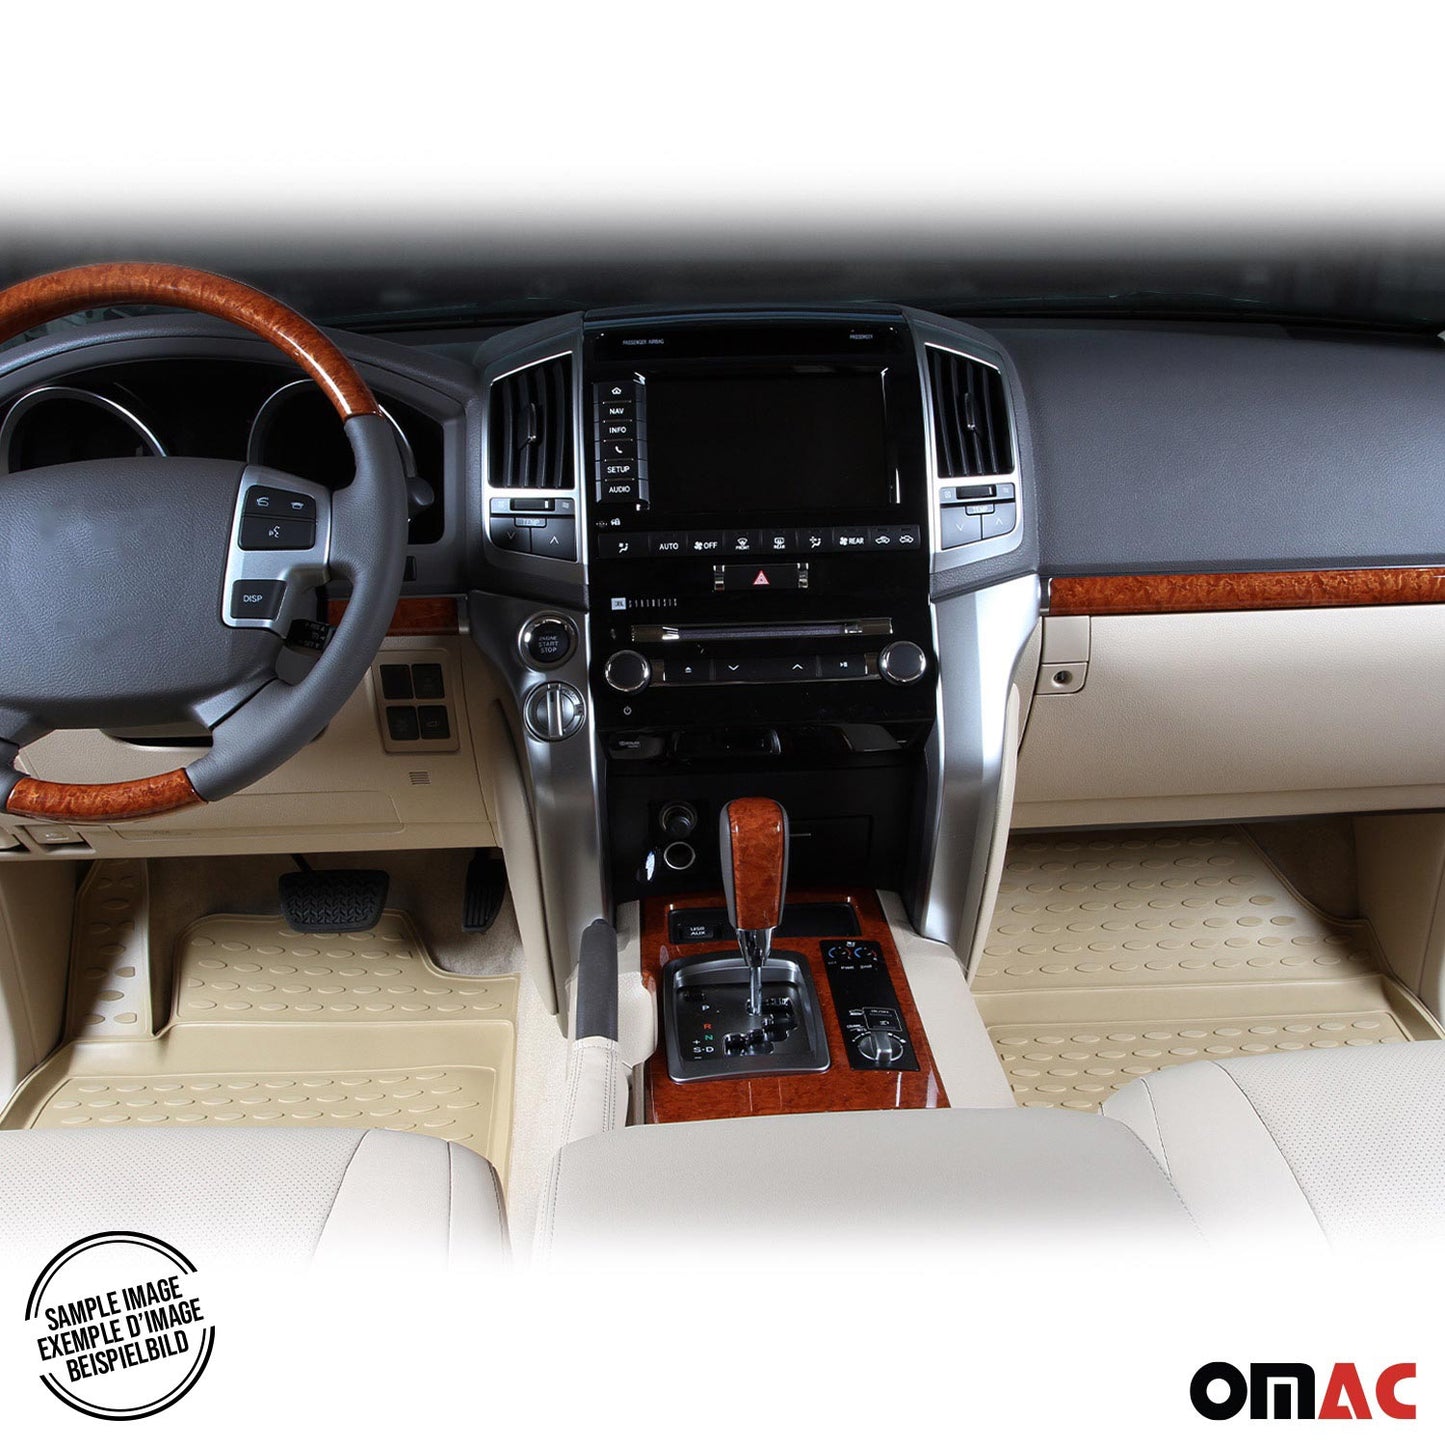 OMAC OMAC Floor Mats Liner for Toyota Highlander 2001-2007 Beige TPE All-Weather 3Pcs 7091443BG